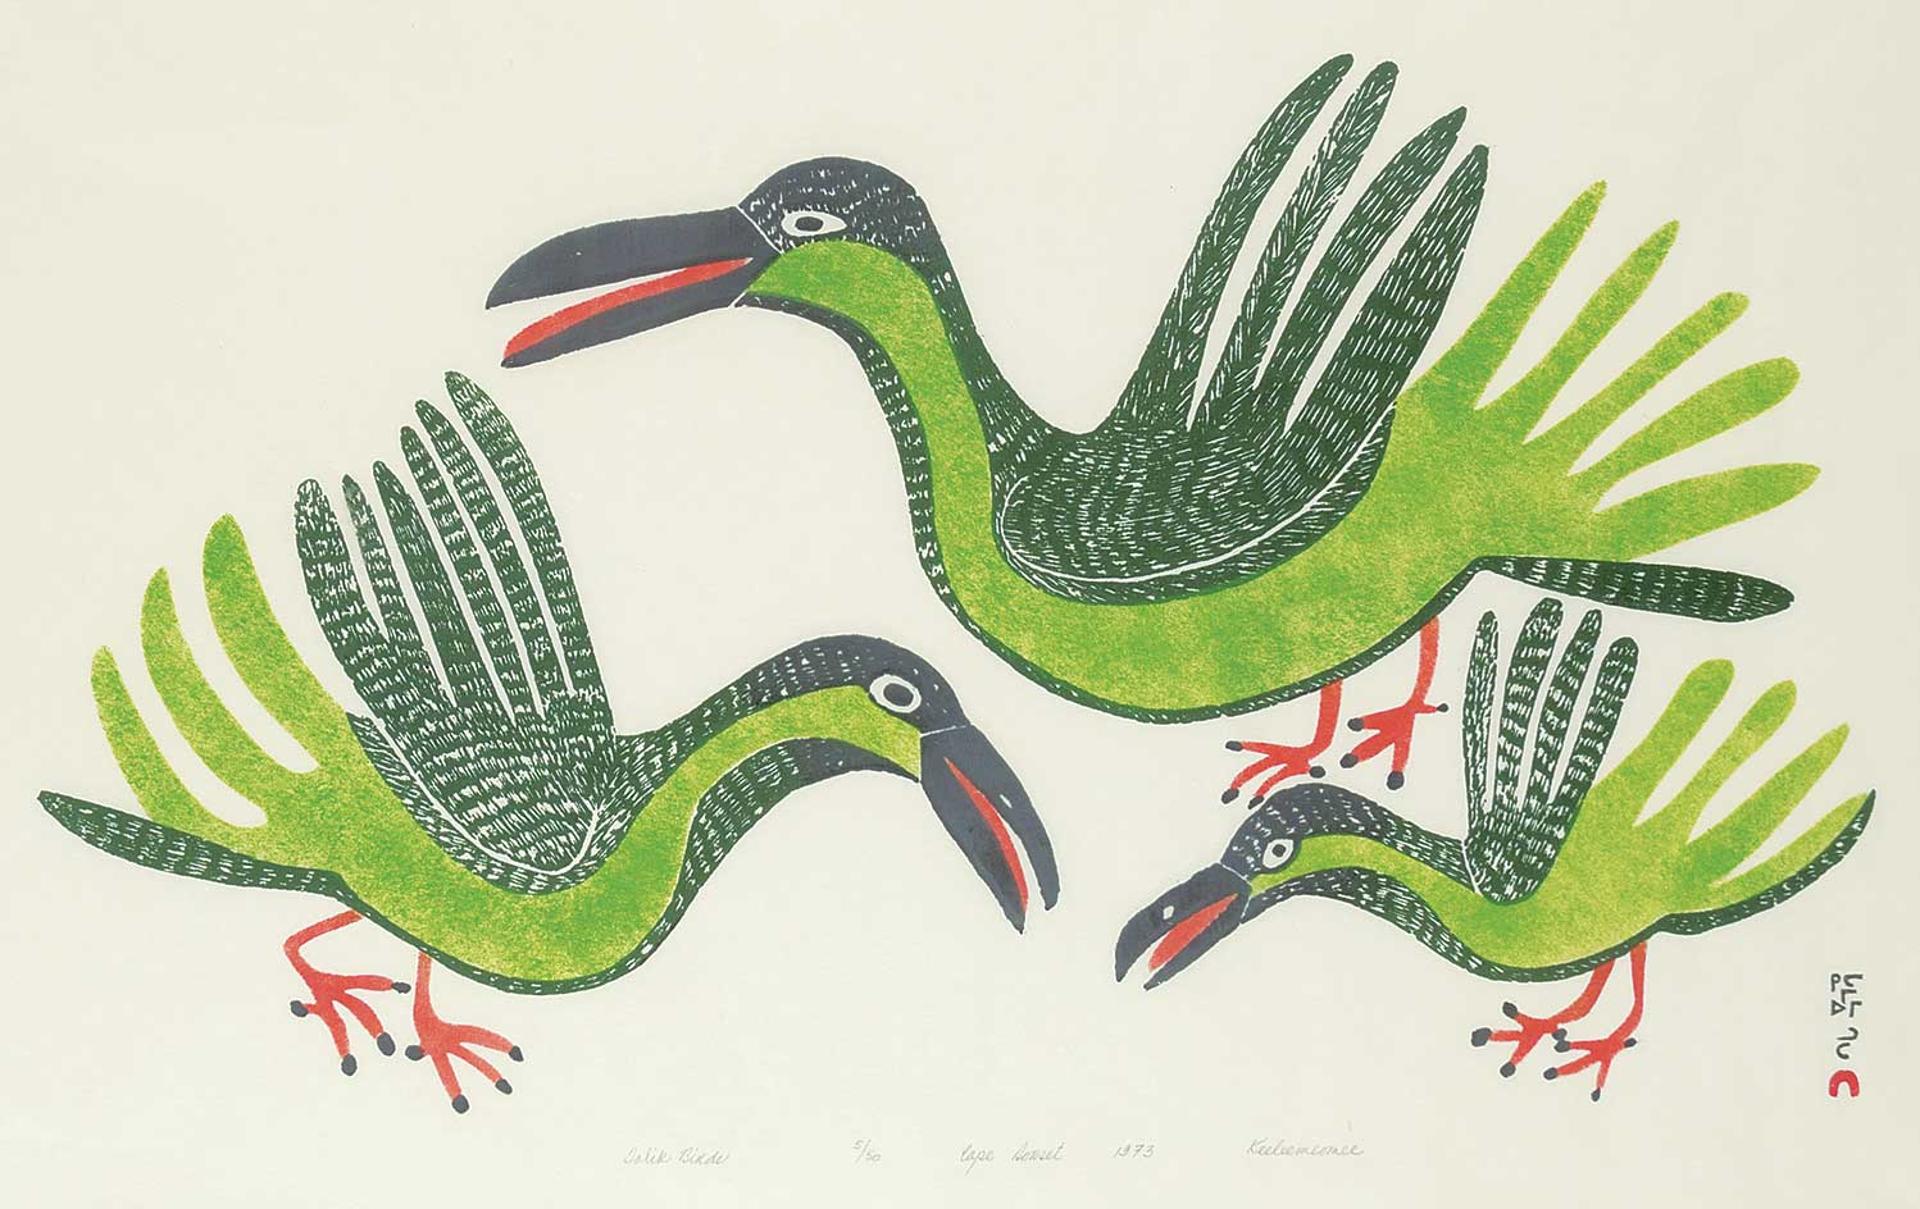 Keeleemeeoomee Samualie (1919-1983) - Talik Birds  #5/50